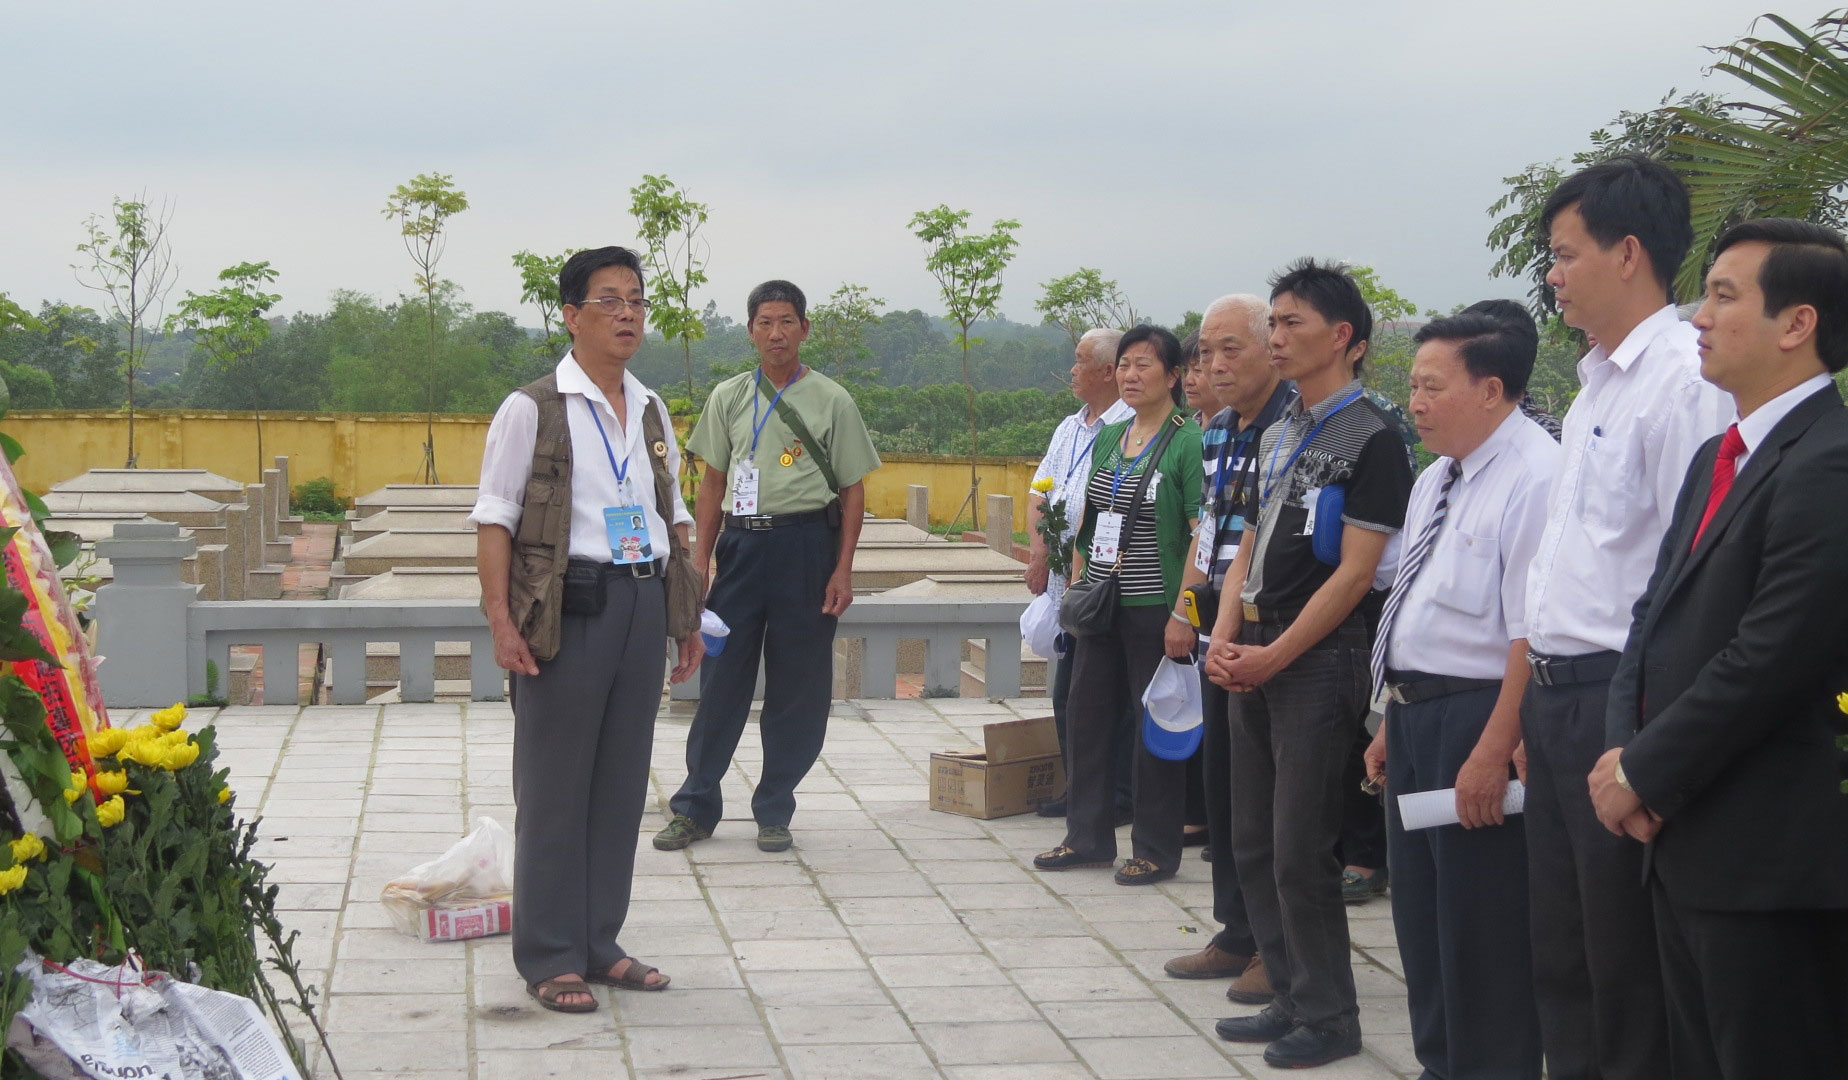 Đoàn cựu chiến binh Trung Quốc đến viếng Nghĩa trang liệt sỹ xã Đào Mỹ- Lạng Giang